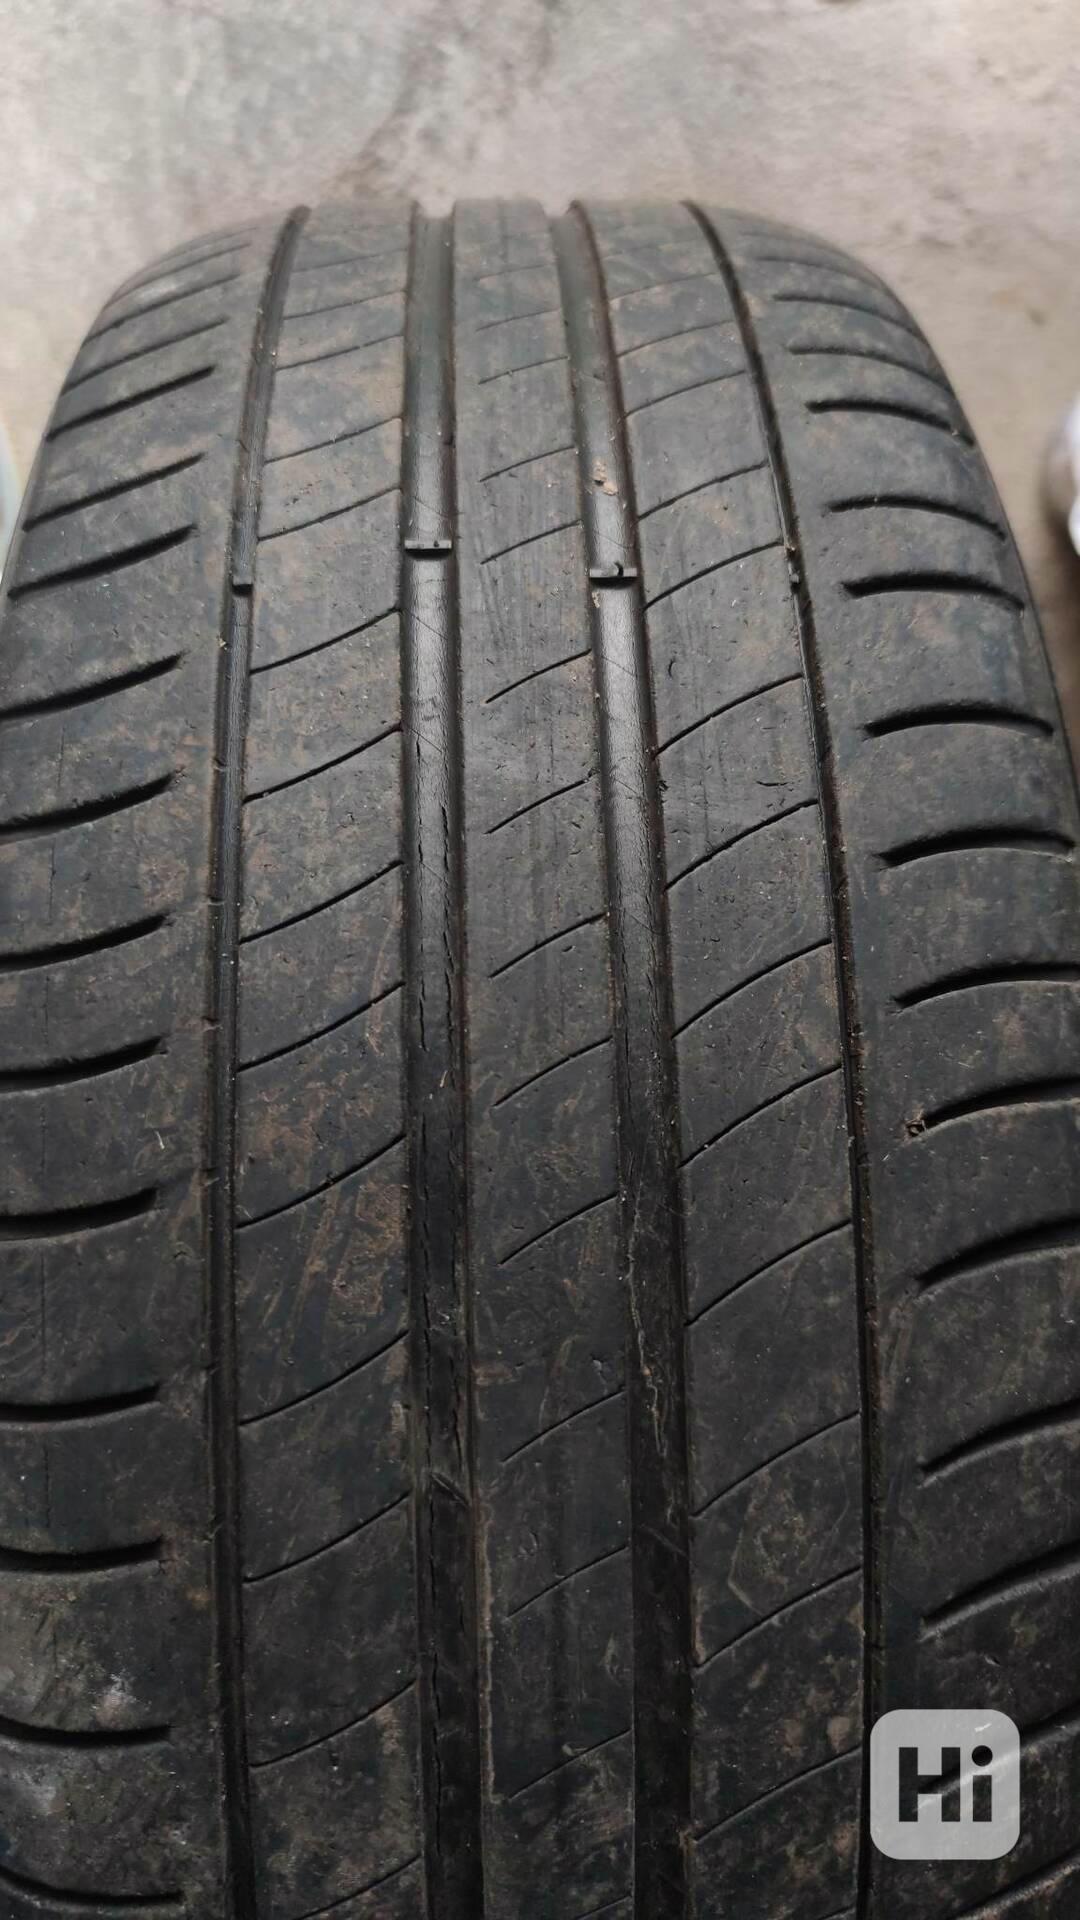 4x letní pneu Michelin 205/55R16 - foto 1